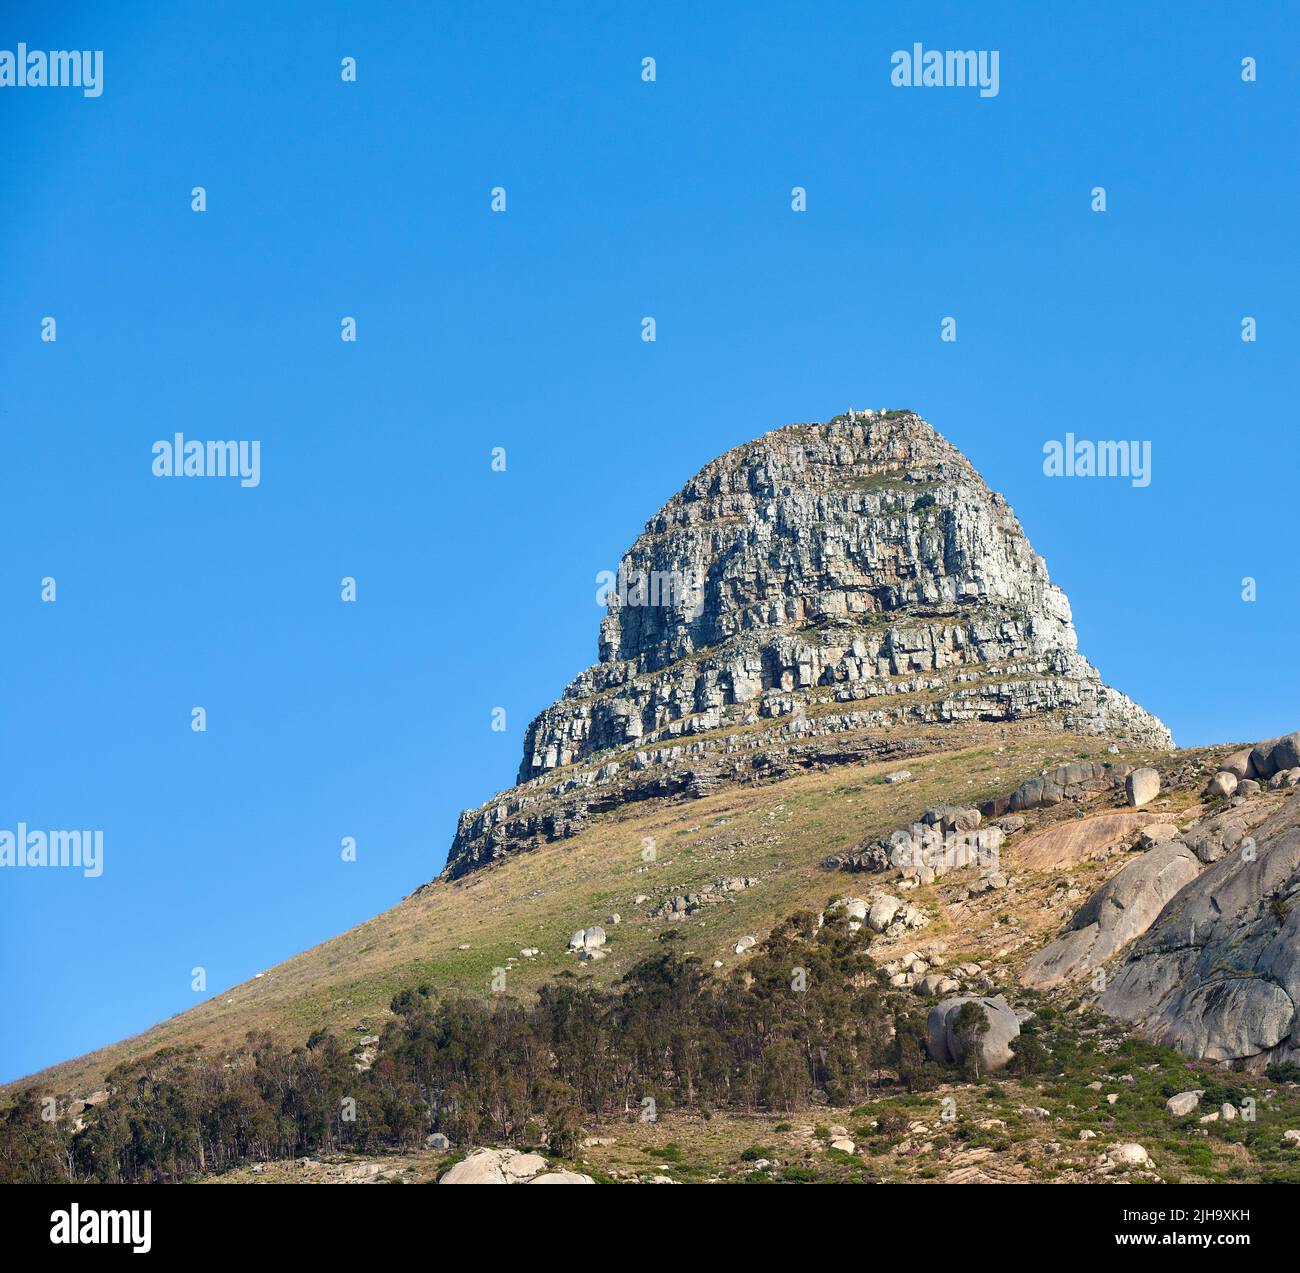 Landschaft von Lions Head Berg auf einem klaren blauen Himmel mit Kopierraum. Rocky Berggipfel mit sanften Hügeln mit Gras Bäume und Sträucher in der Nähe bedeckt Stockfoto